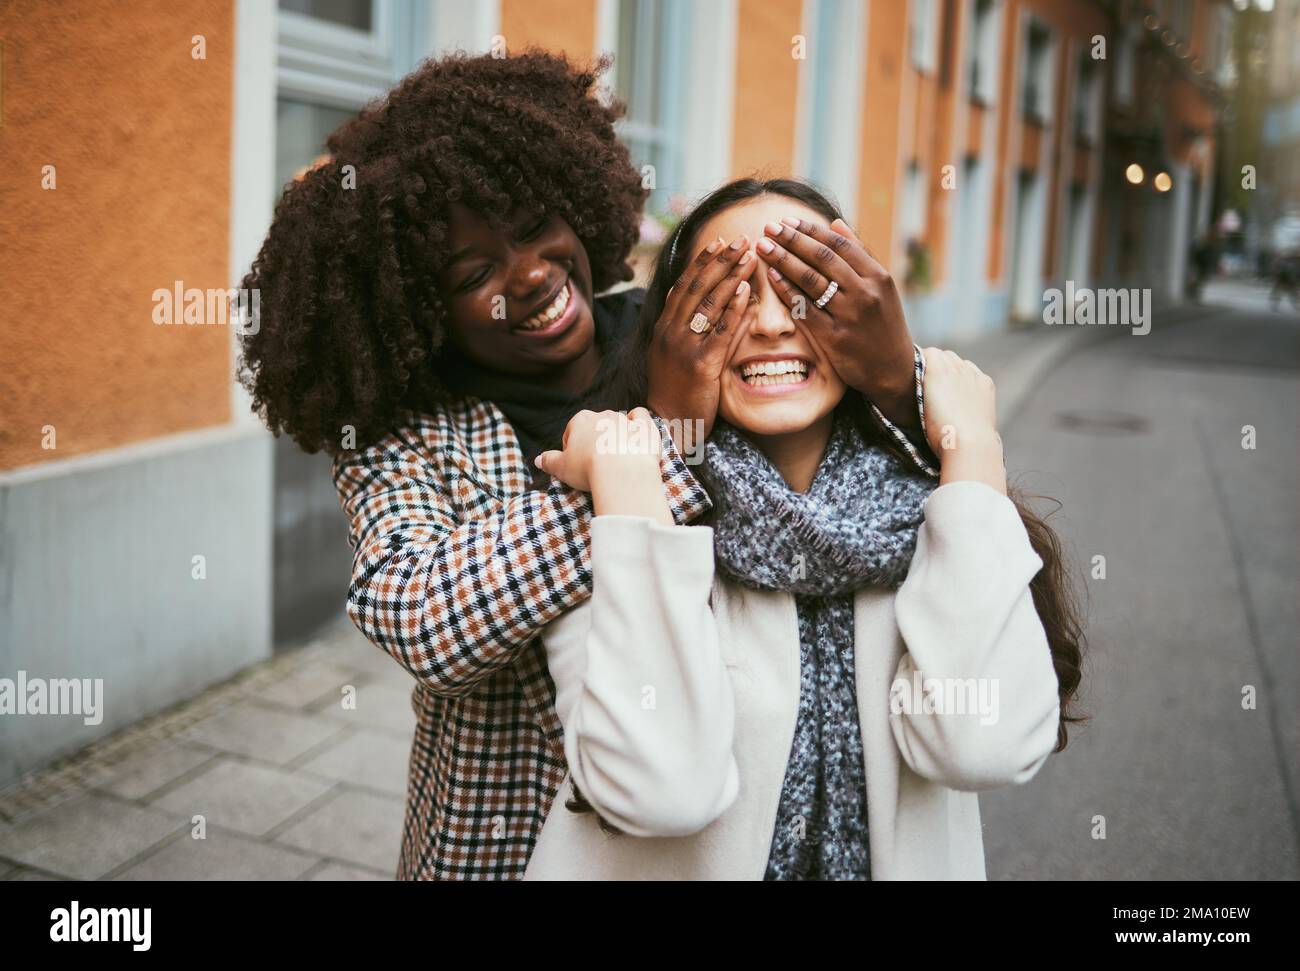 Les femmes, le collage ou les mains couvrant les yeux dans le cache et la recherche, jeu ludique ou comique à New York City, route ou rue. Souriez, heureux ou amis amusants et Banque D'Images